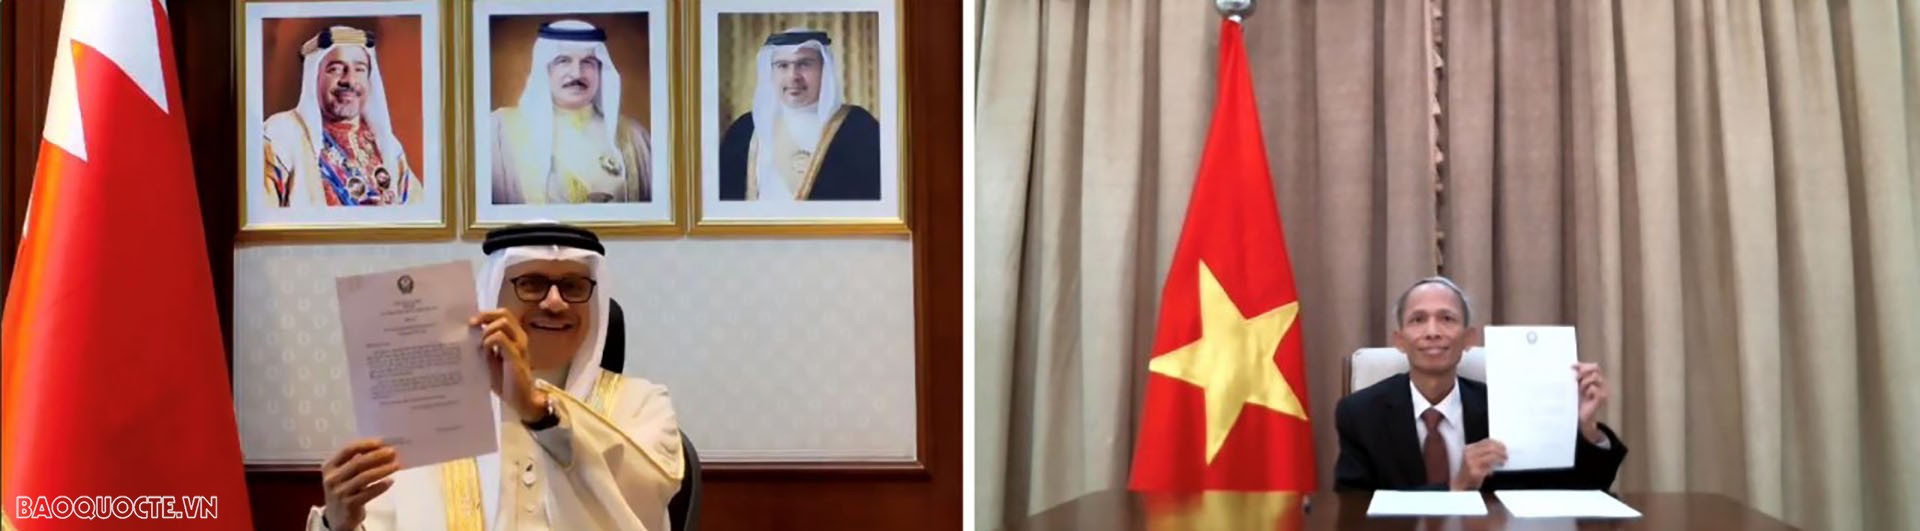 Đại sứ Đặng Xuân Dũng trình bản sao Thư ủy nhiệm lên Bộ trưởng Ngoại giao Vương quốc Bahrain Abdullatif bin Rashid Al Zayani theo hình thức trực tuyến.